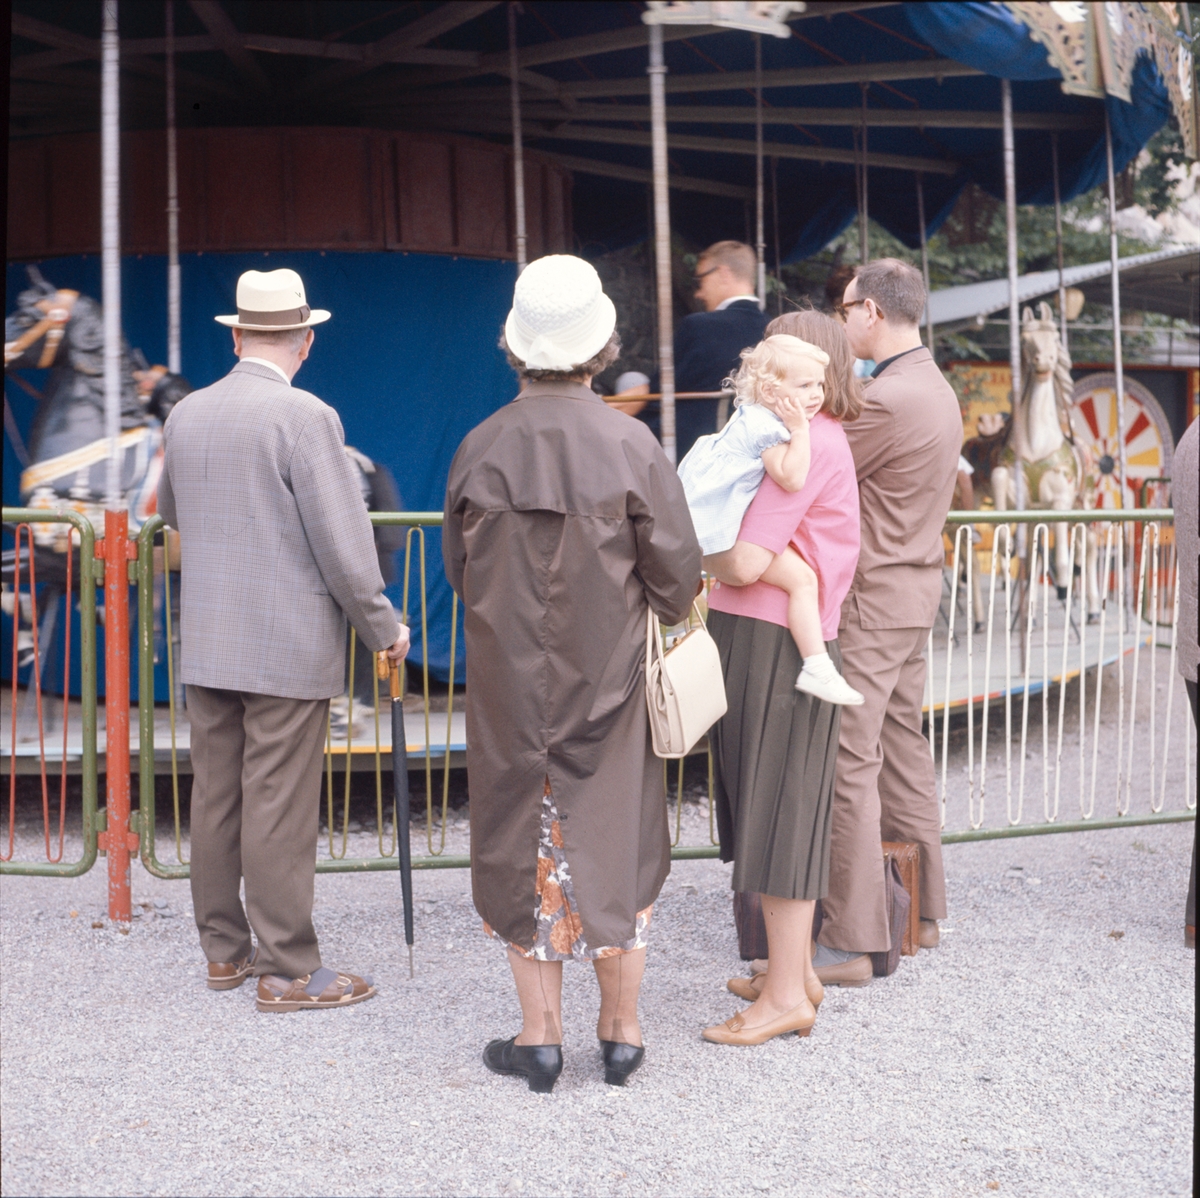 En grupp personer betraktar en karusell. Ett barn betraktar något som är mer spänande och som inträffar utanför bilden.